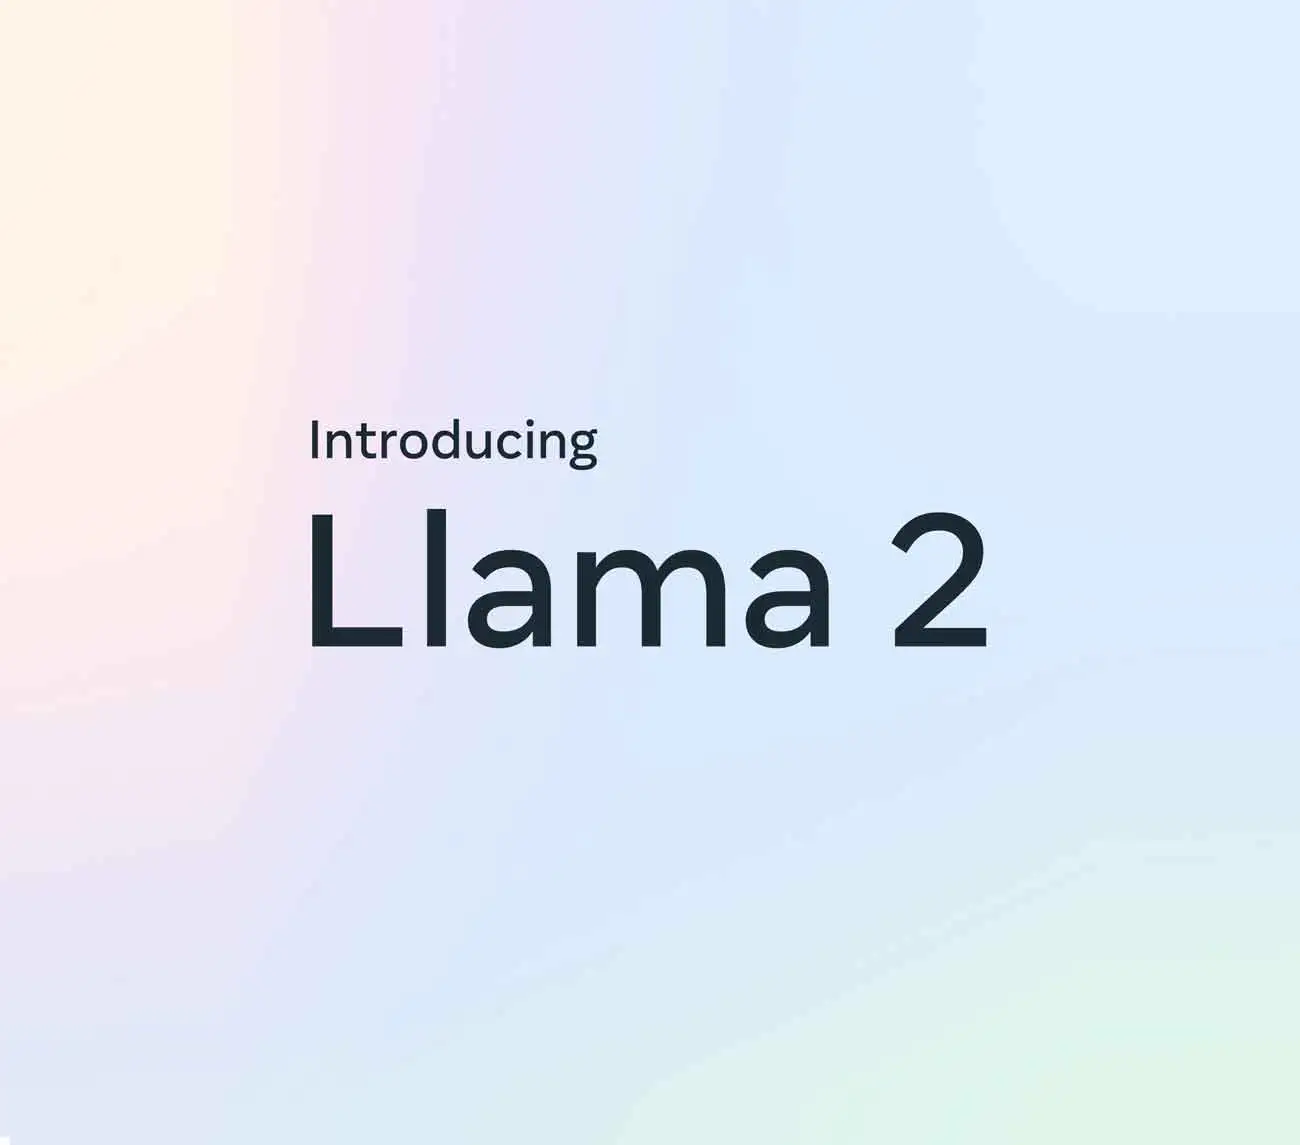 Llama 2 Chatbot